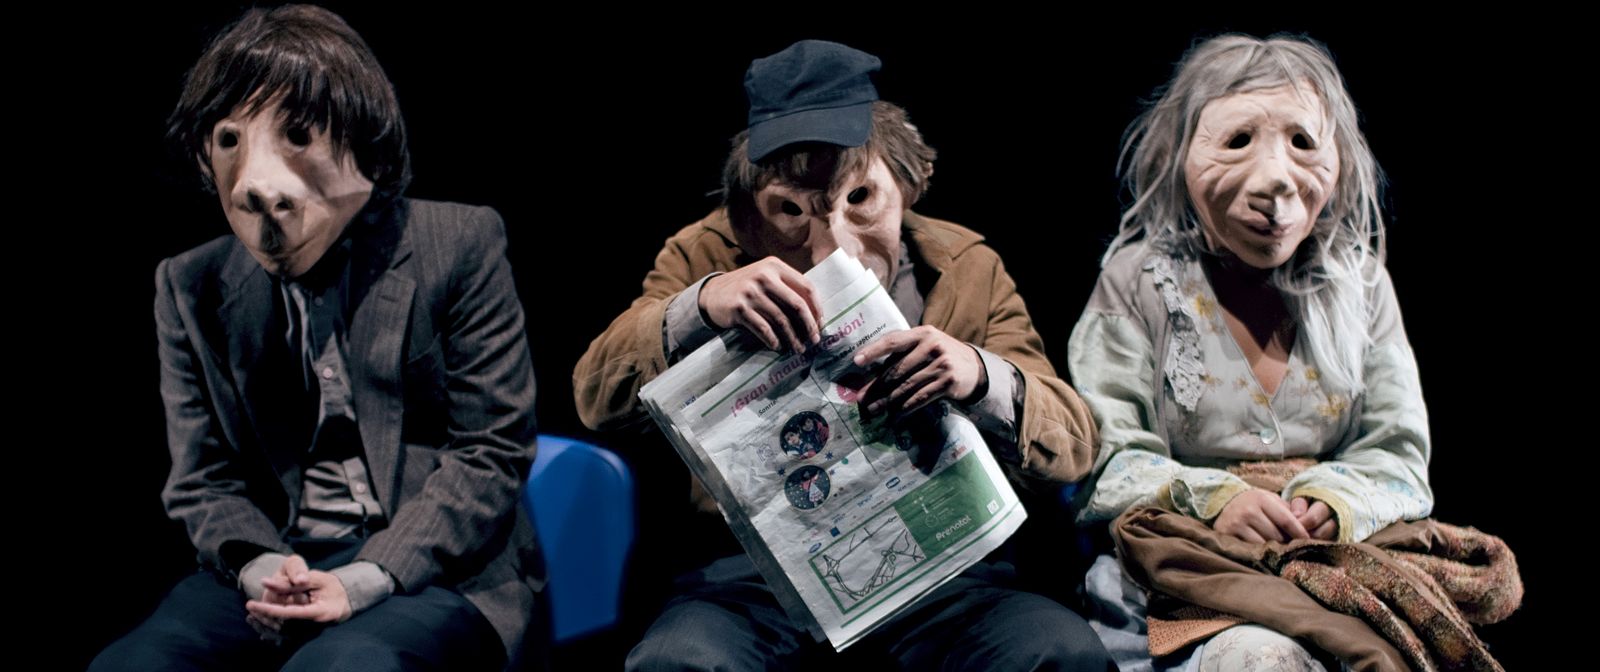 Drei Personen mit menschlichen Masken sitzen nebeneinander und schauen nach vorne. Die Figur in der Mitte hält eine Zeitung in der Hand.